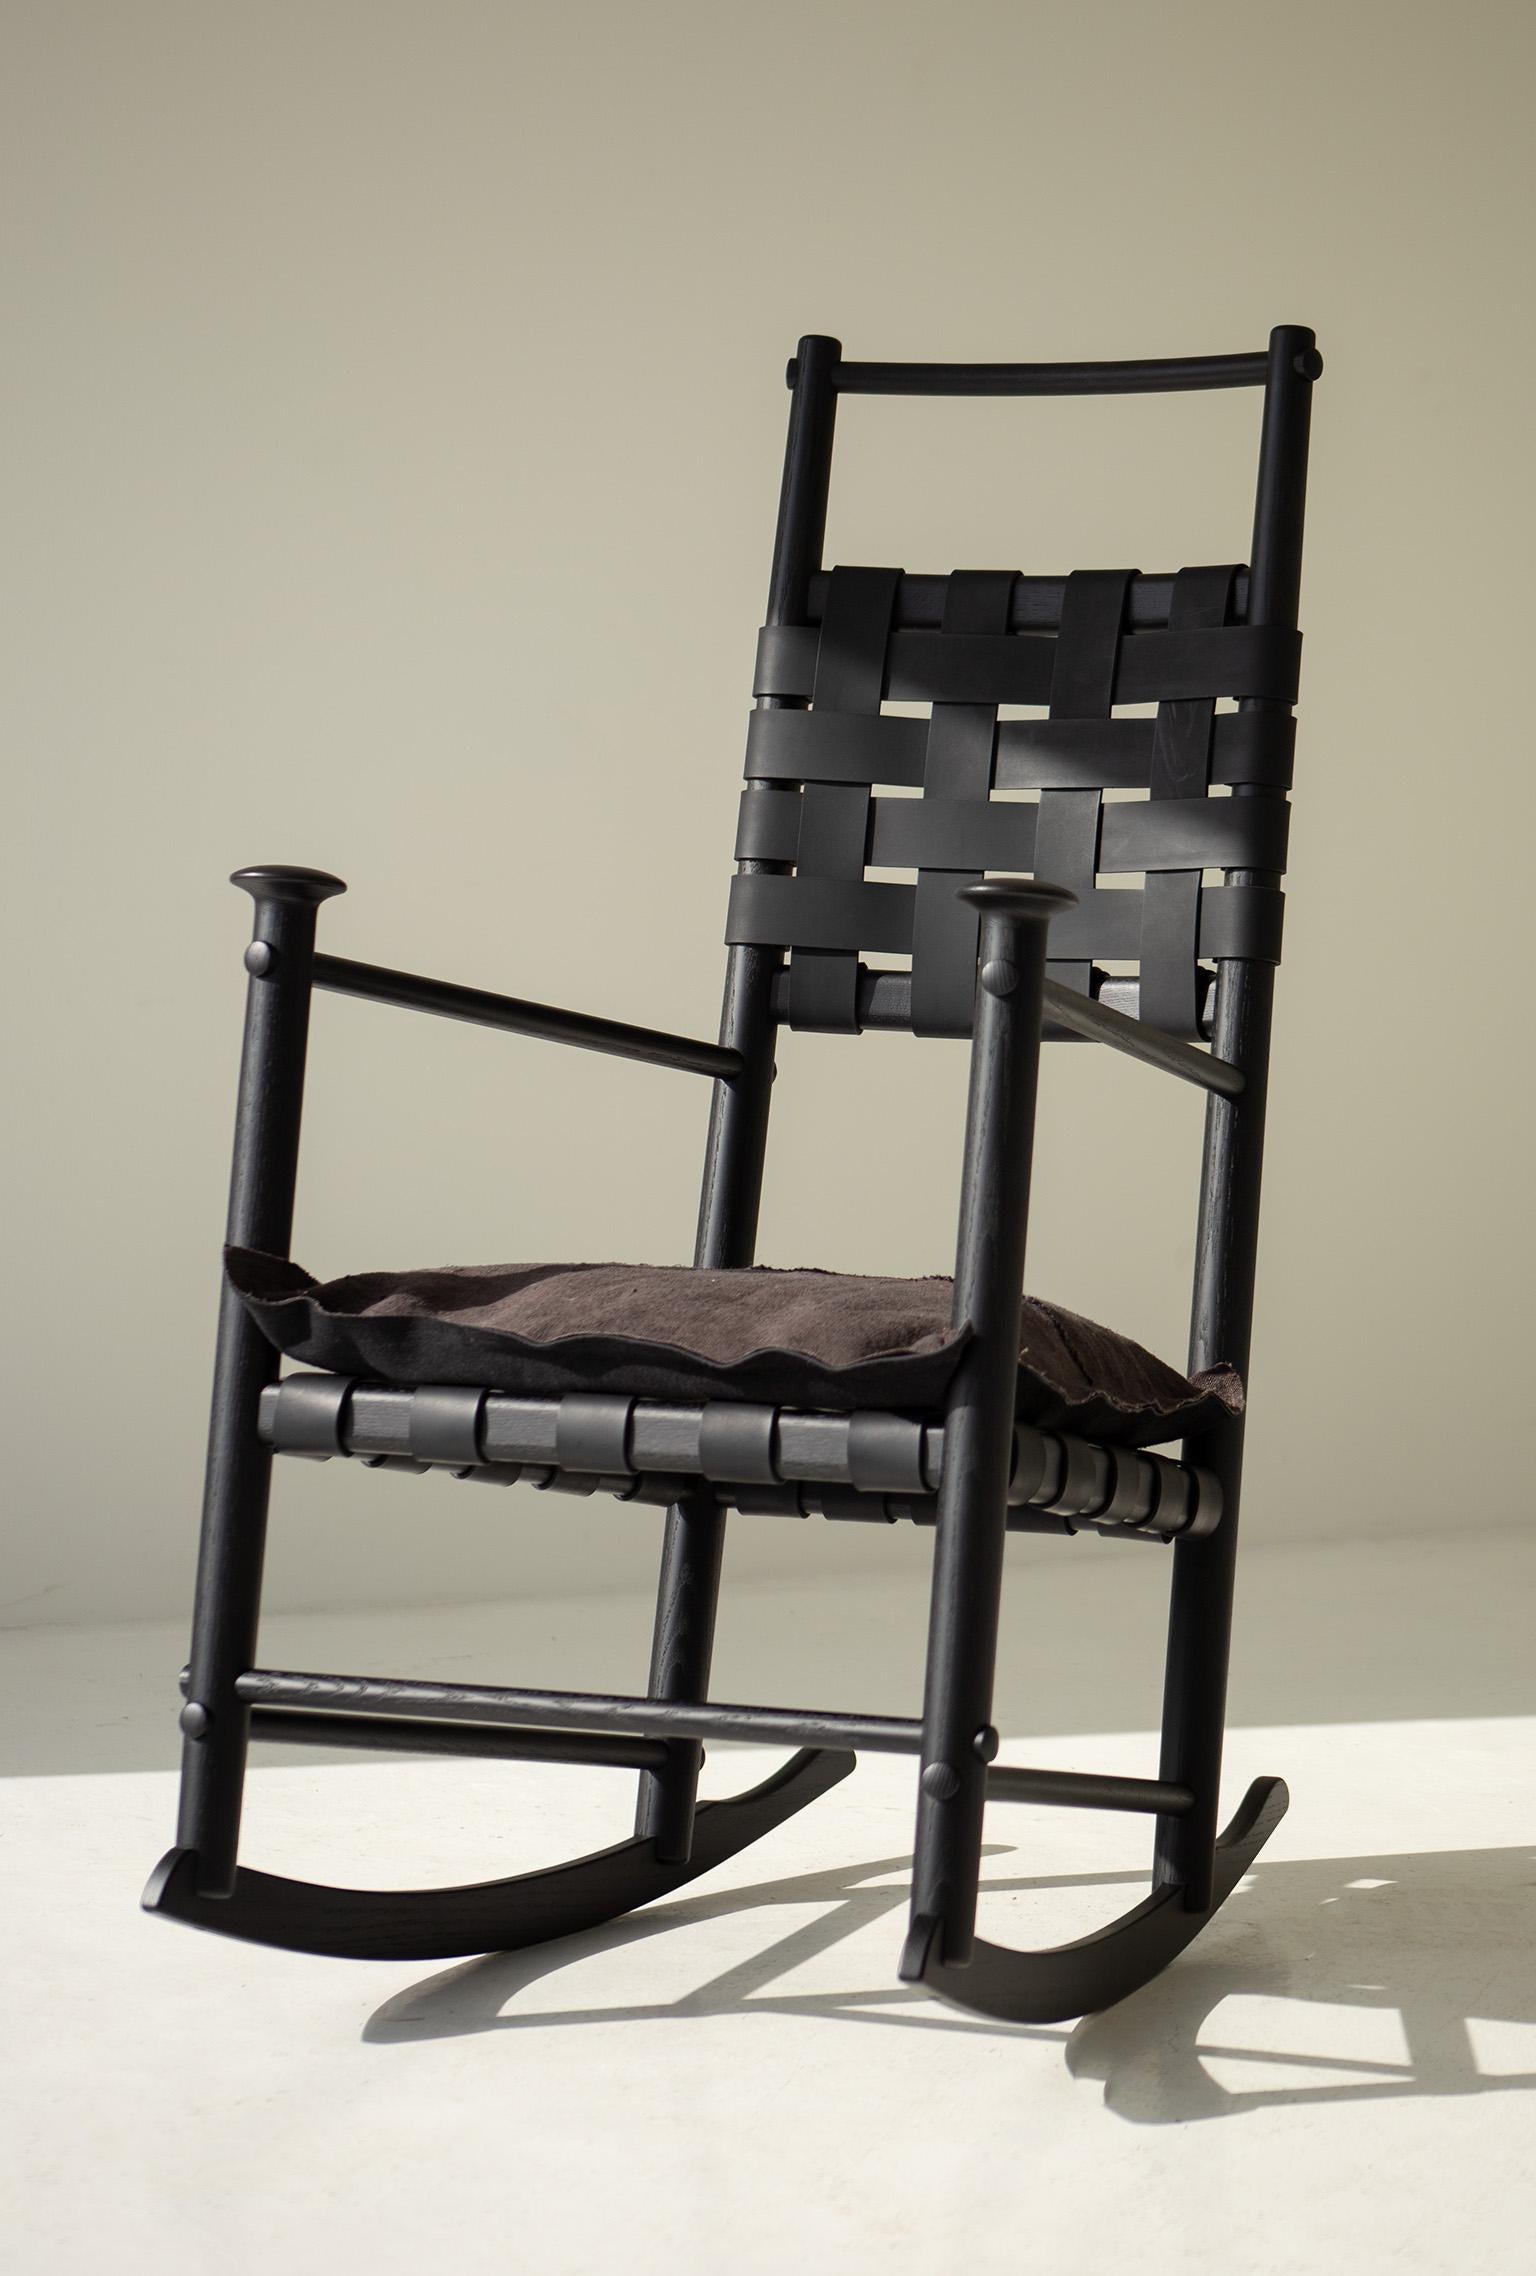 Fauteuil à bascule Catawba, fauteuil à bascule moderne en cuir, noir, pour Craft Associates

Ce fauteuil à bascule Catawba de Craft Associates® Furniture est fabriqué de manière experte. Les tables latérales sont construites en bois dur massif, à la